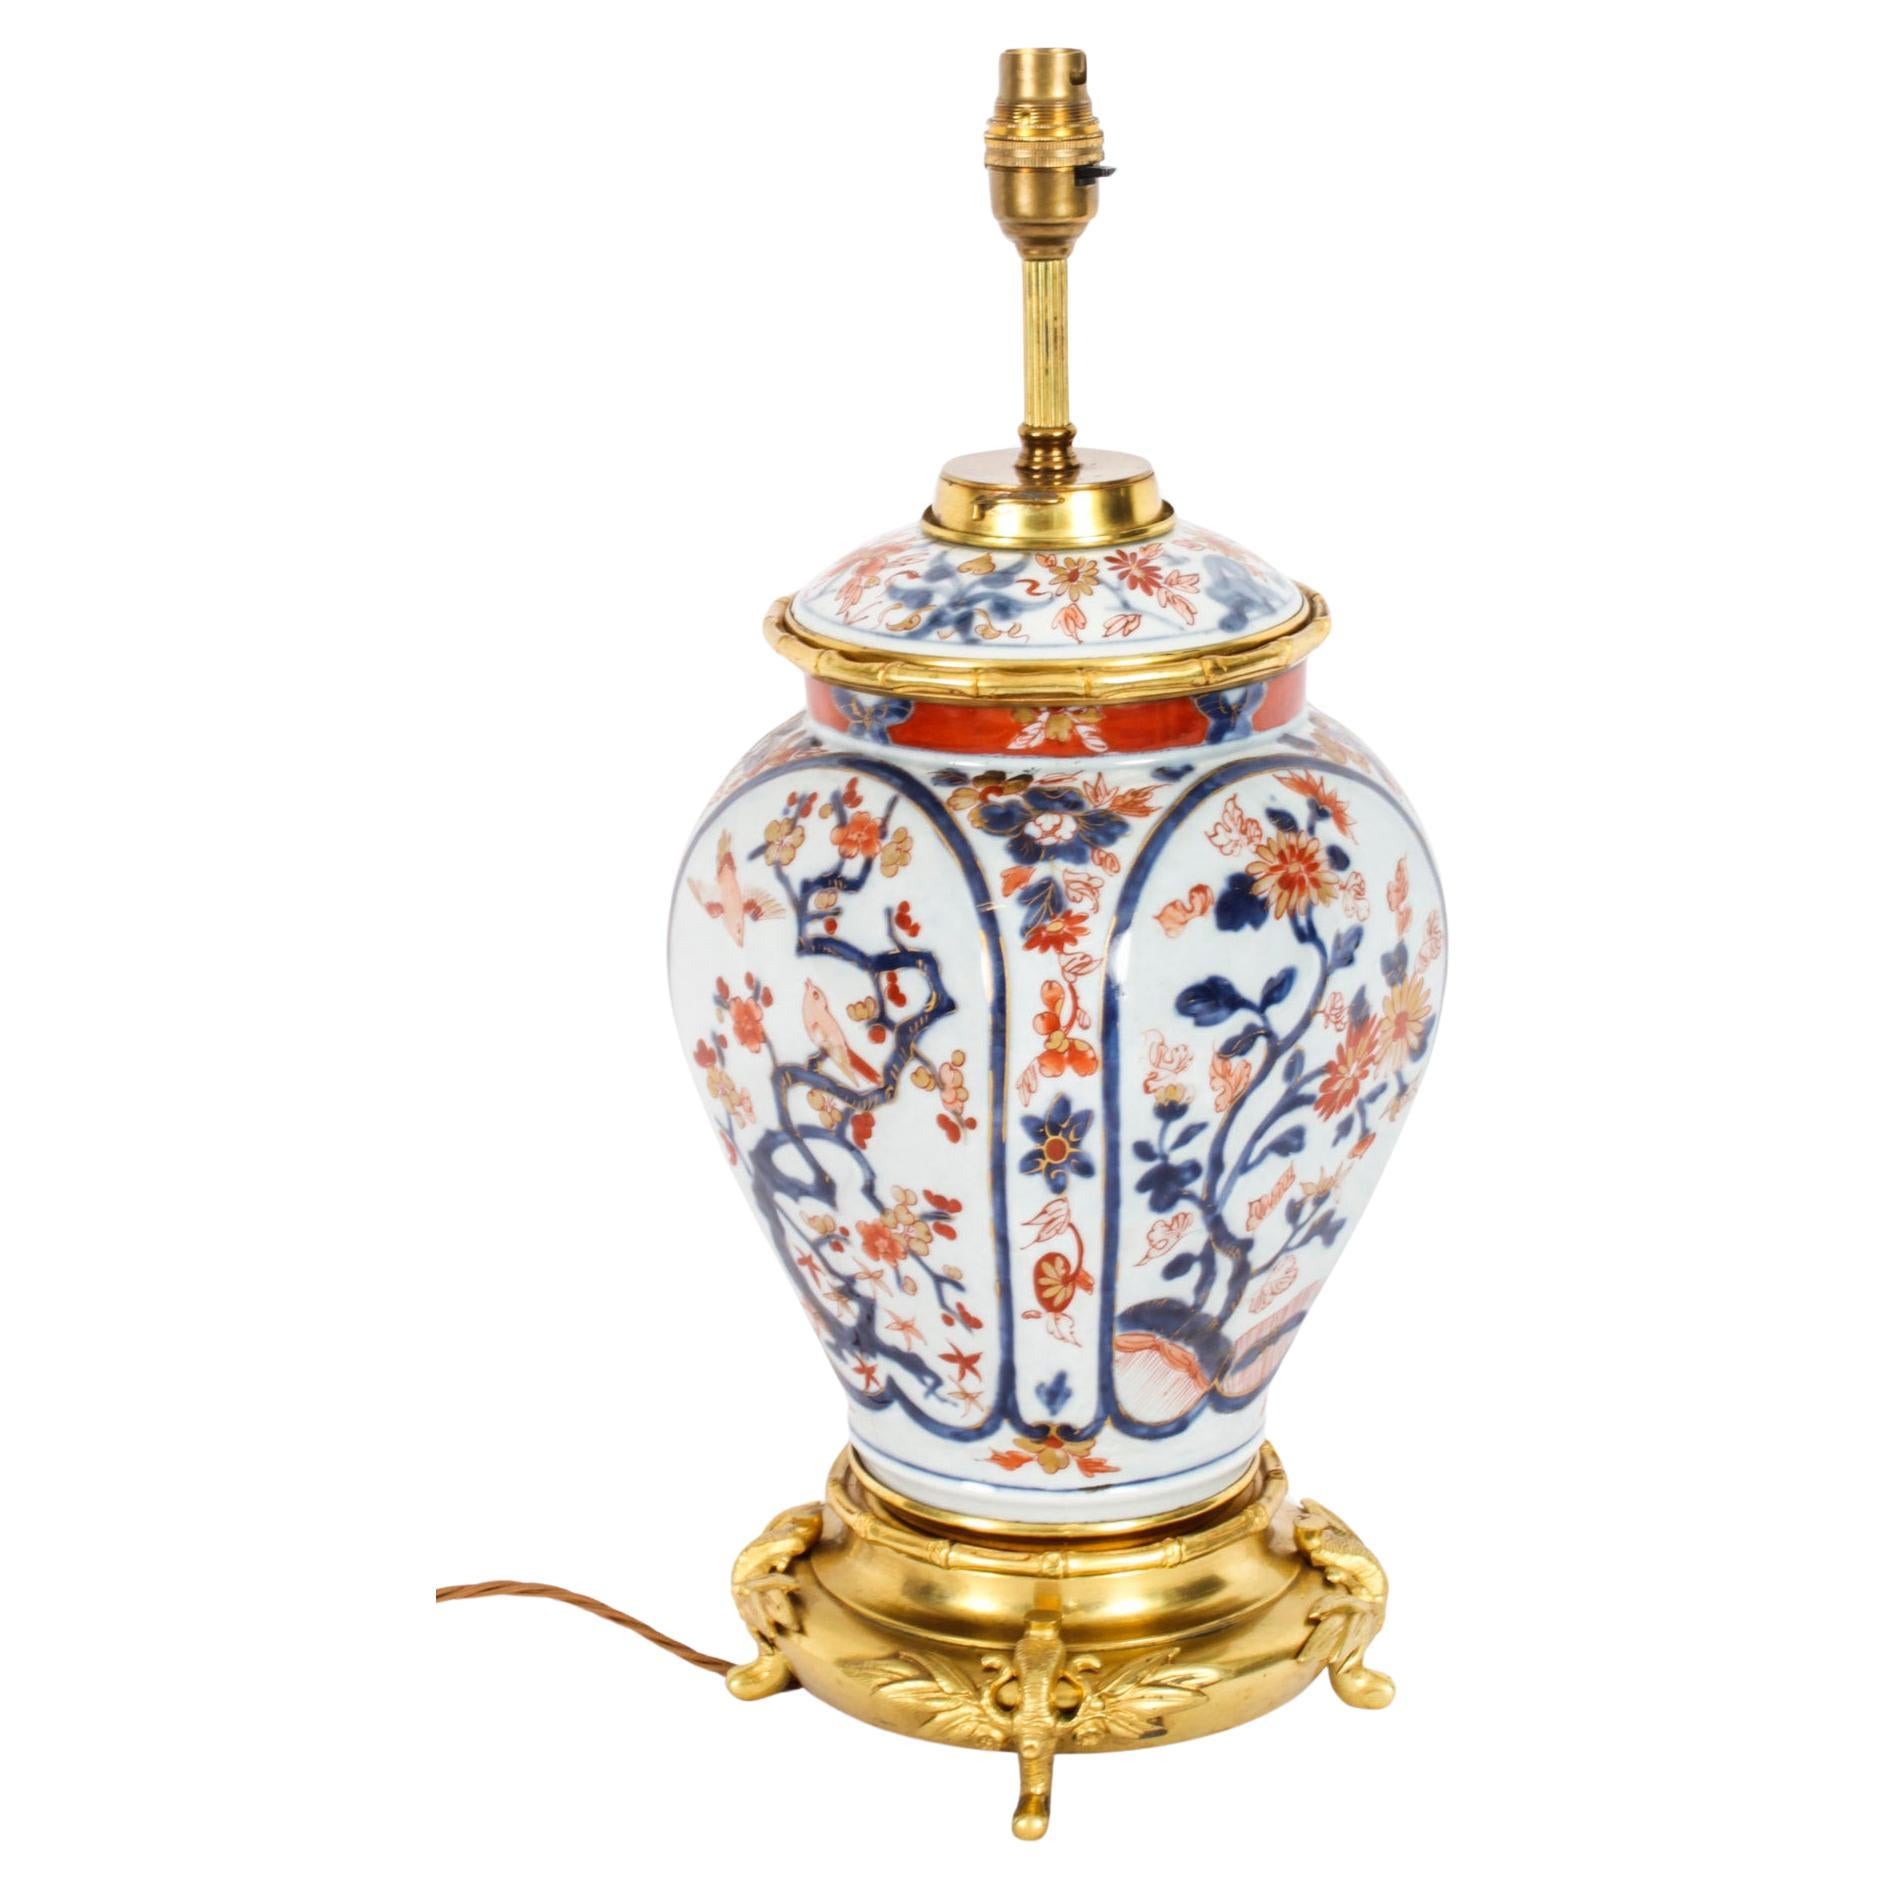 Antique Japanese Imari Porcelain Table Lamp c. 1840 19th Century